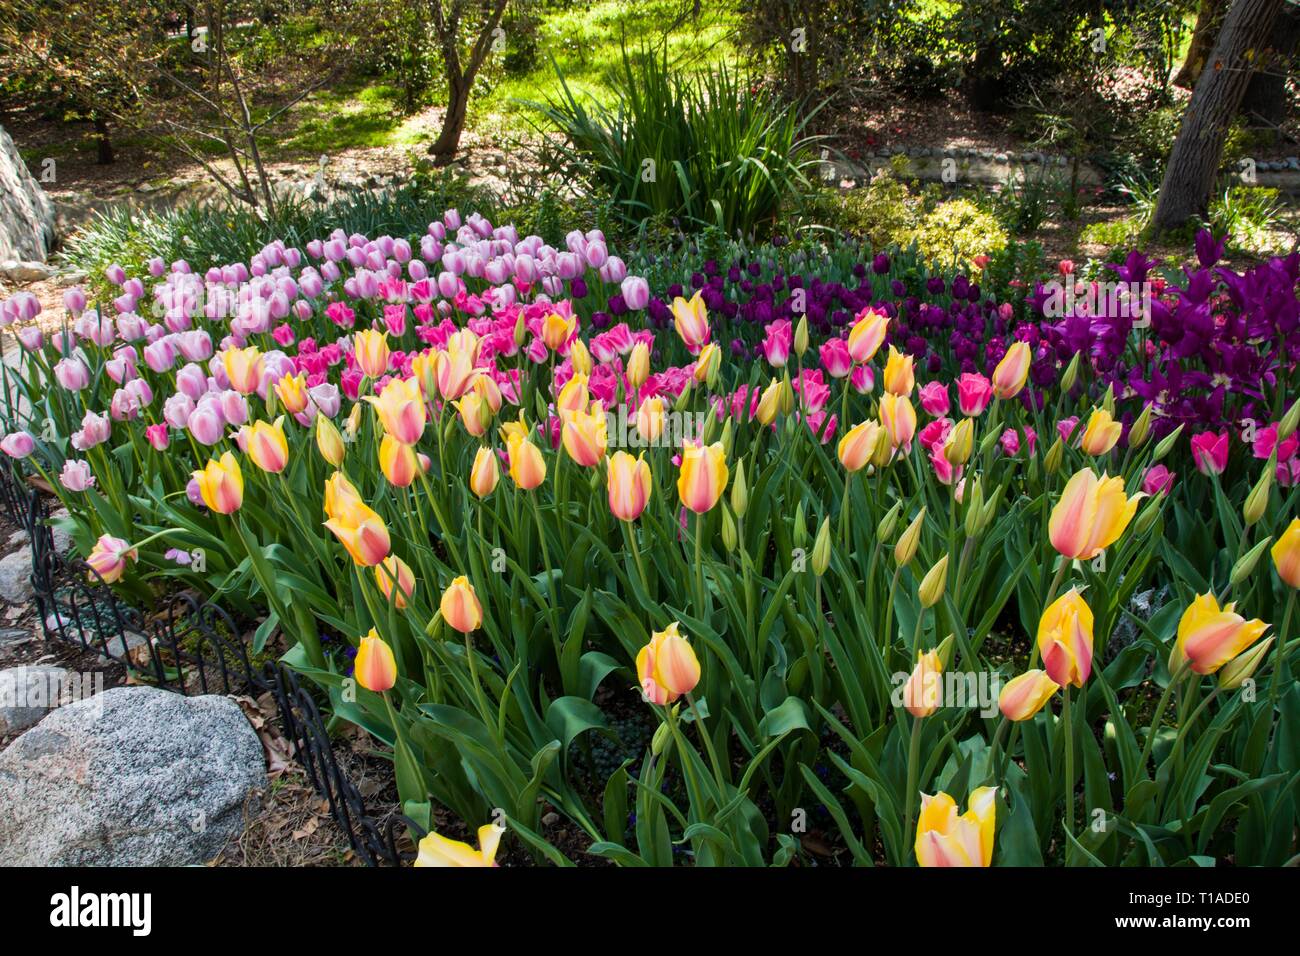 C'est la manie des tulipes temps ! Les touristes affluent vers Descanso Gardens de voir la glorieuse, tulipes colorées au pic de floraison. La Cañada Flintridge, Californie. Banque D'Images